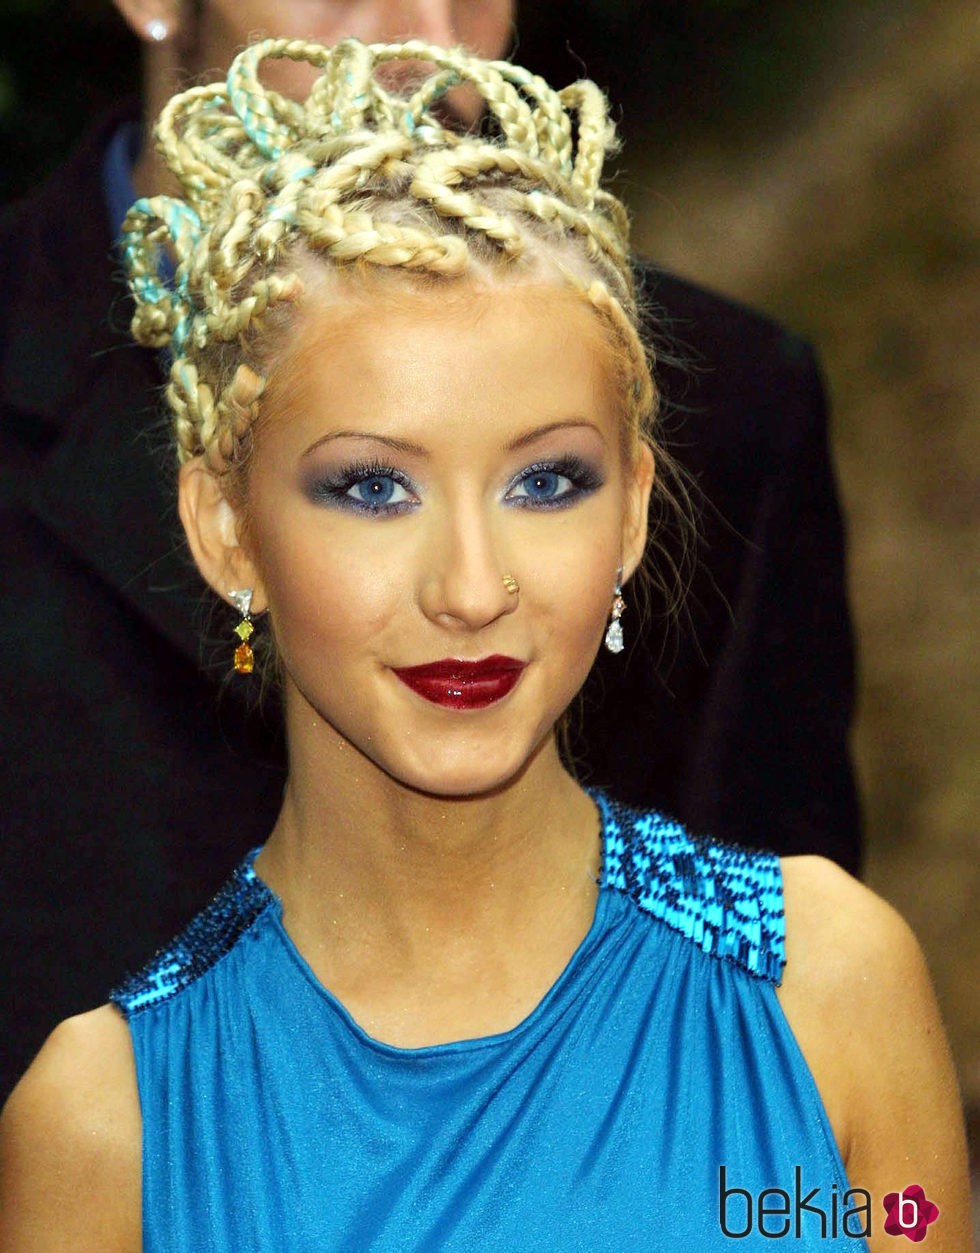 Christina Aguilera en World Music Awards en 2001